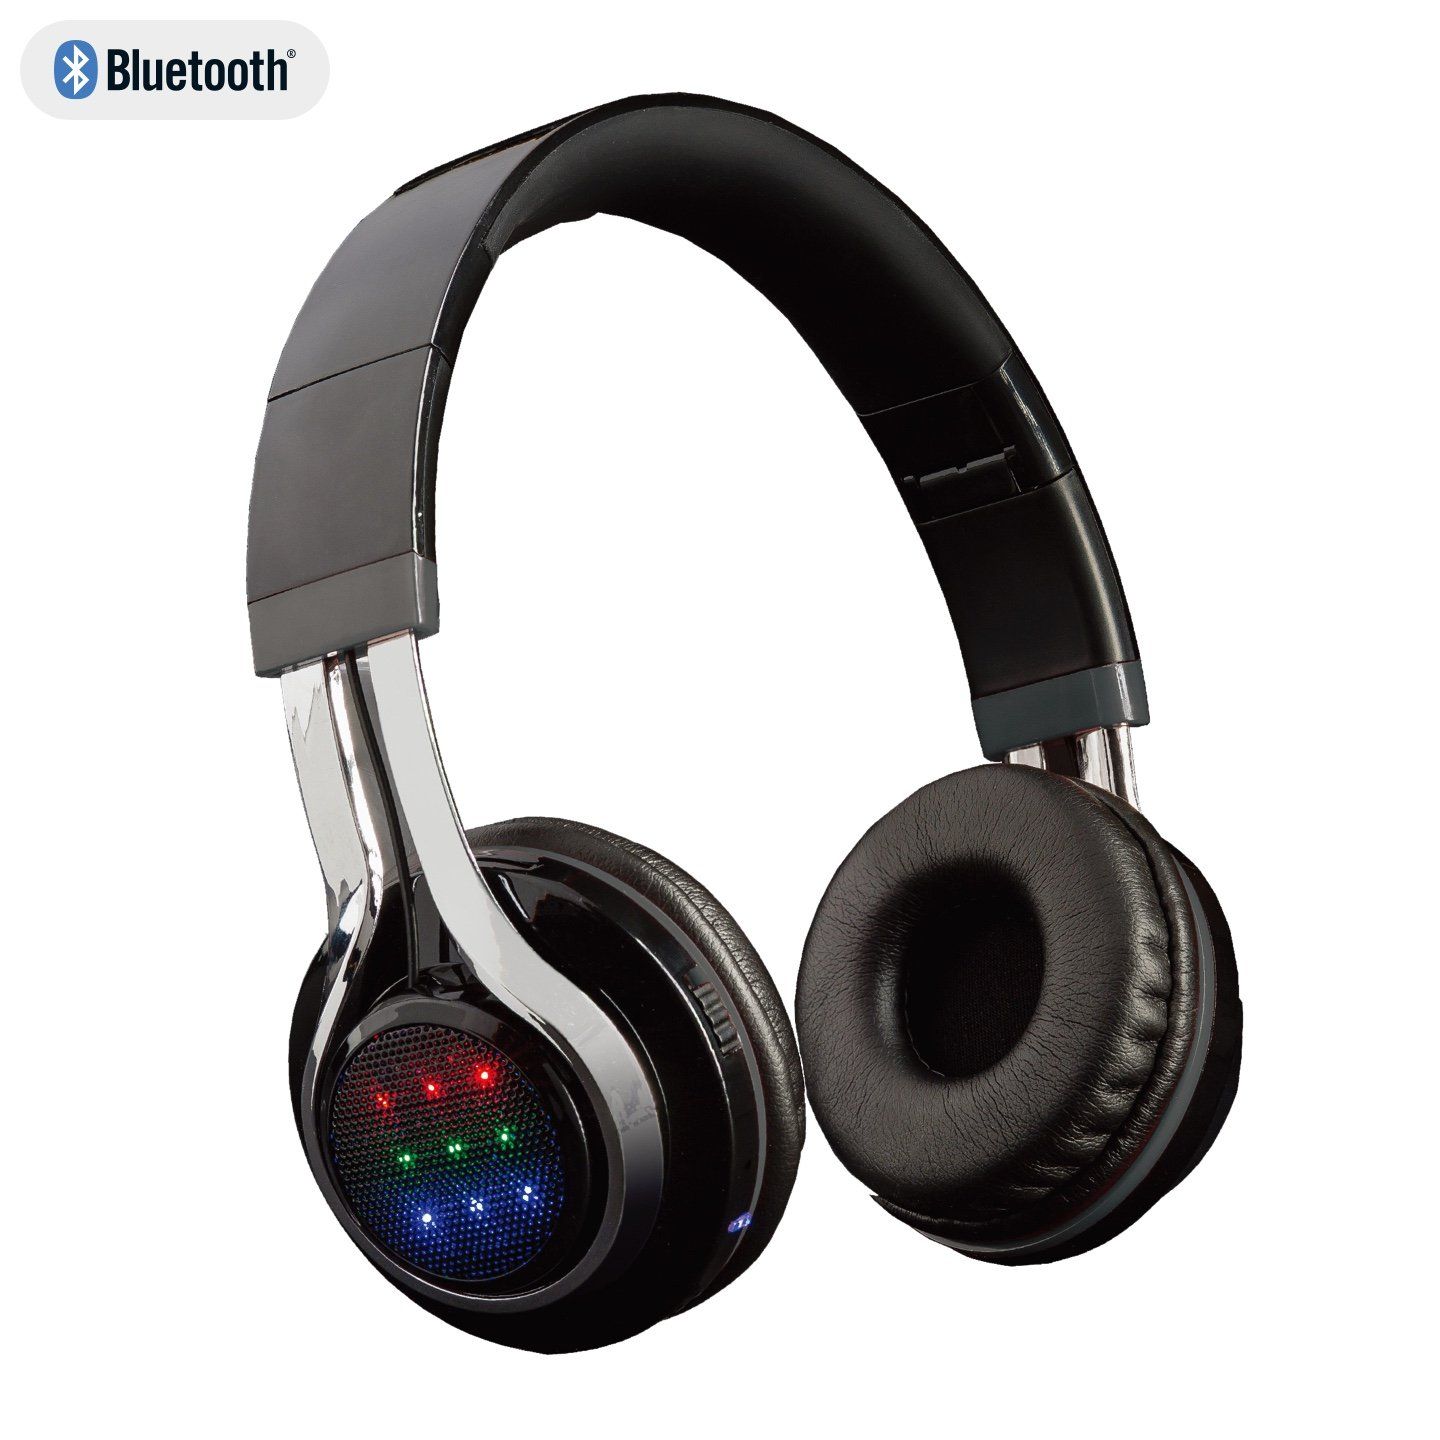 Bluetooth LED Headphone 8717278.86274.3 - Black